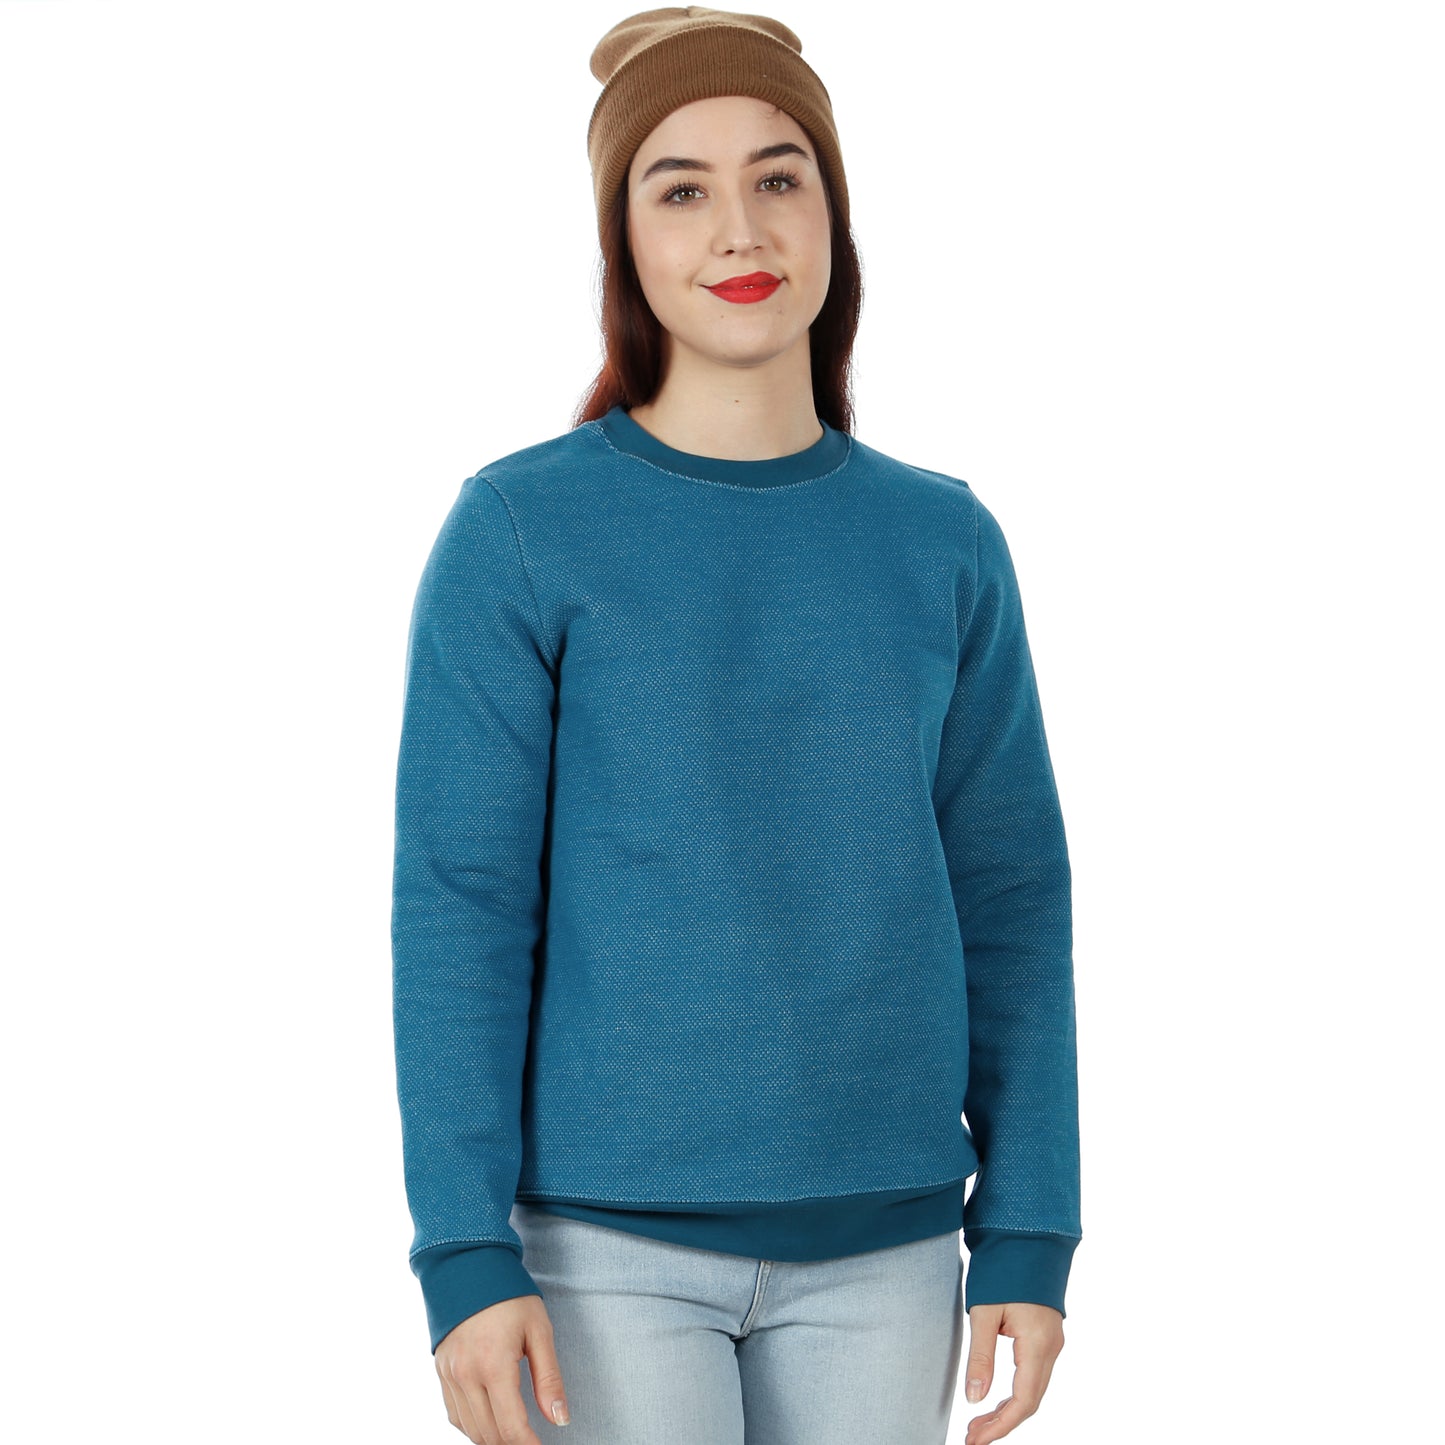 Sweater FRAU DENIZ | Papierschnitt